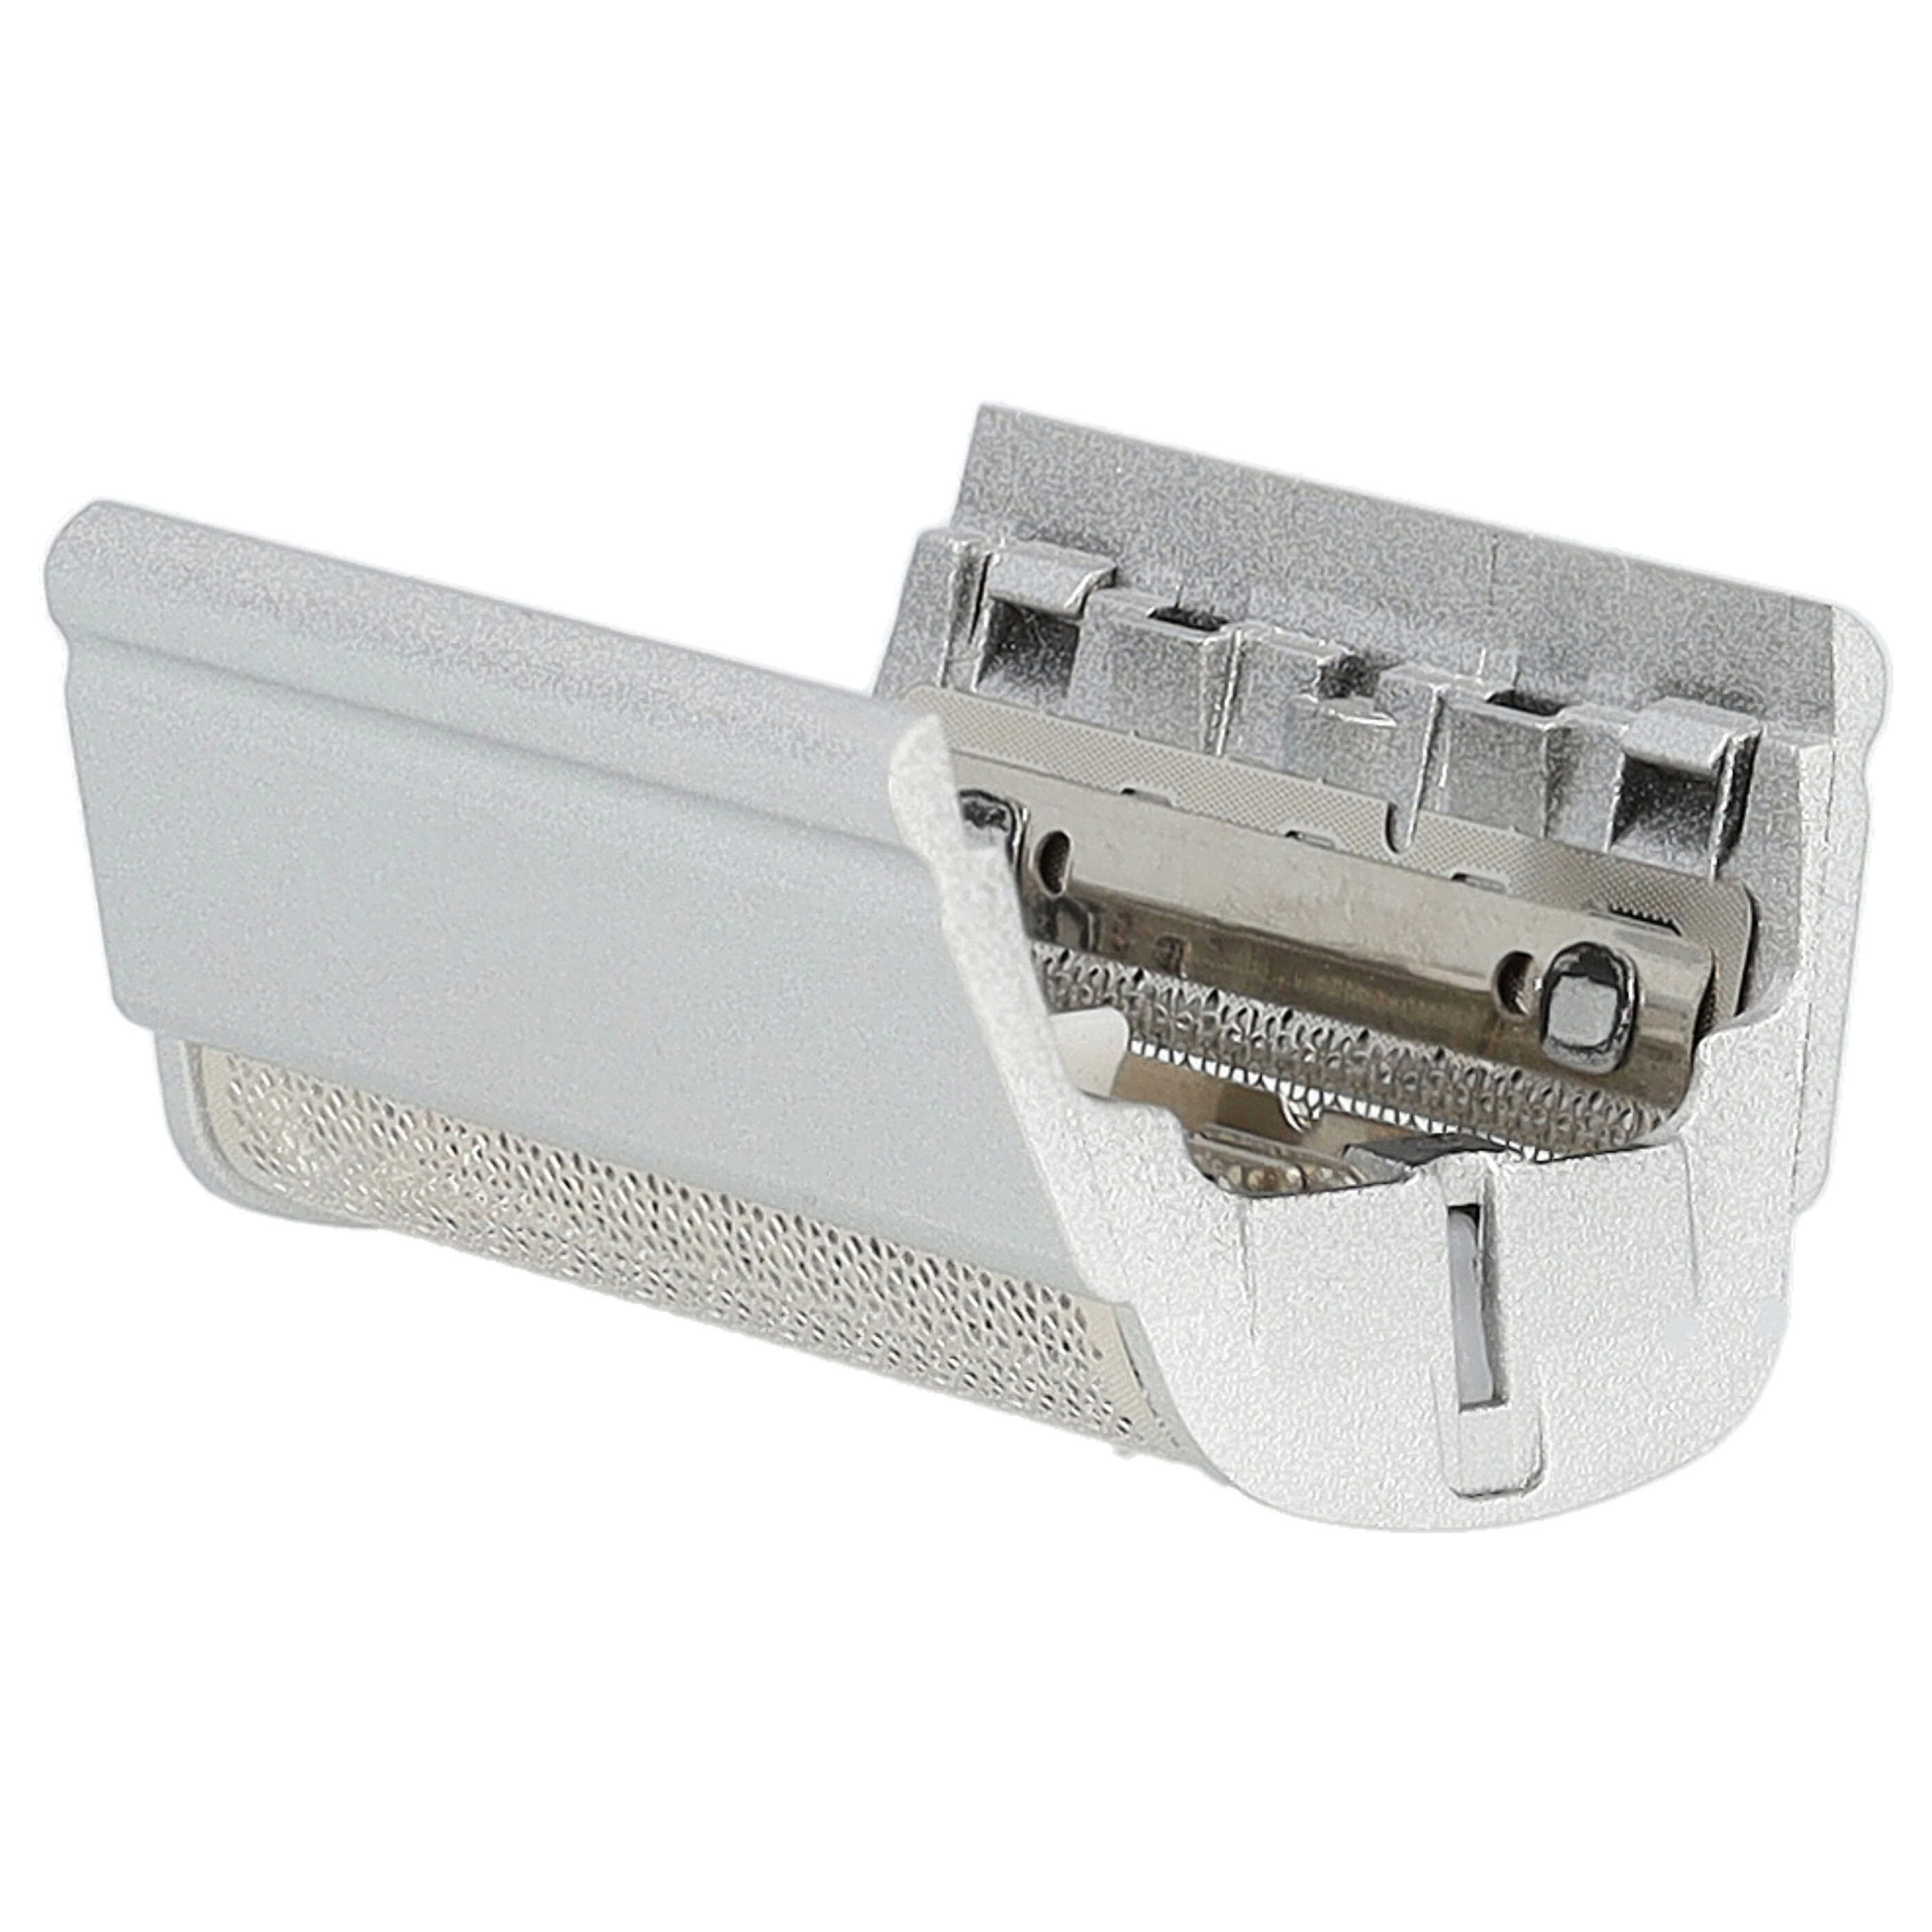 Doble hoja de corte reemplaza Braun SB505, 31B, 31S para afeitadoras Braun - incl. marco, plata